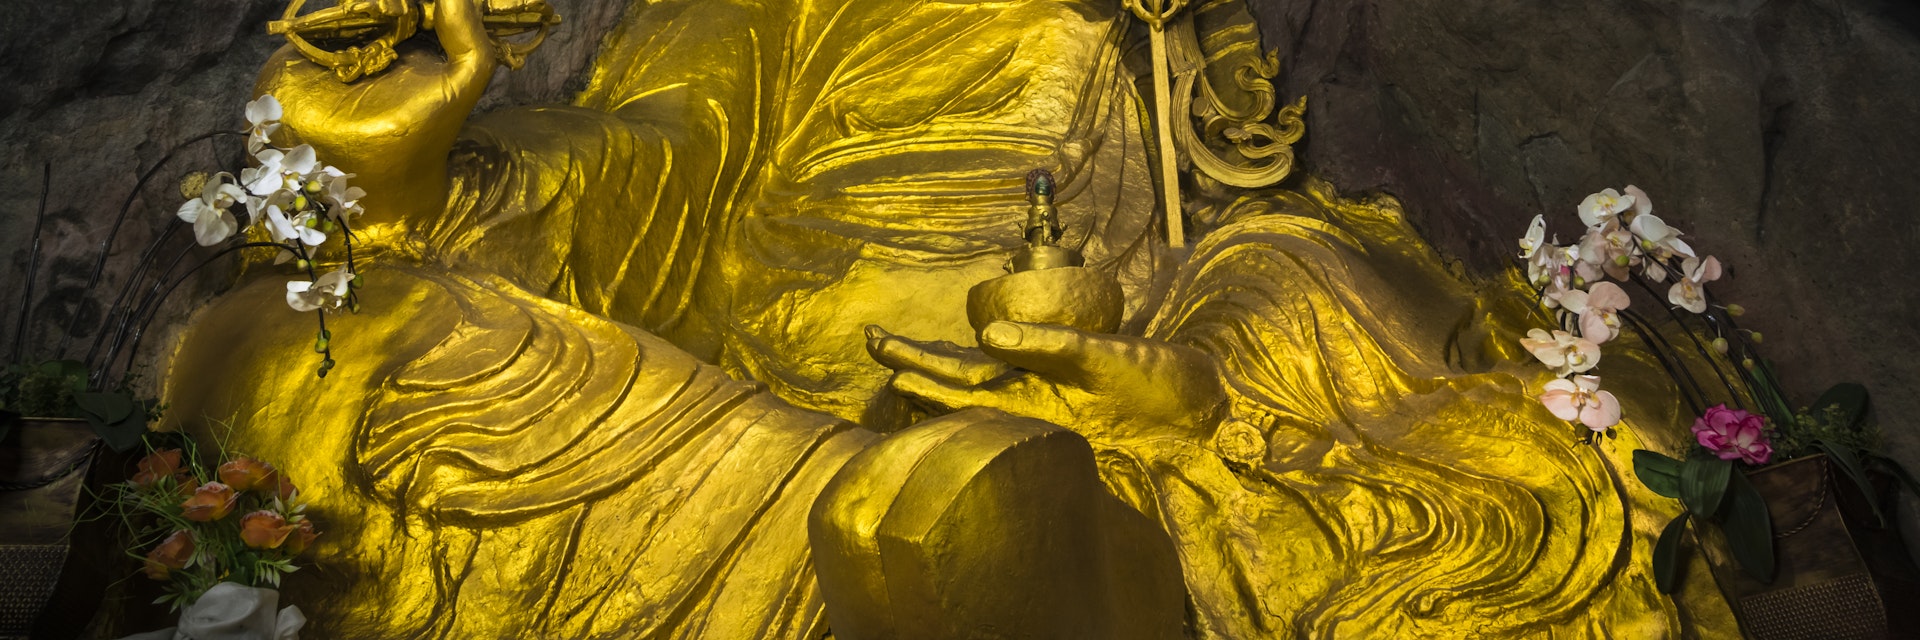 Padmasambhava cave, statue of guru Padmasambhava